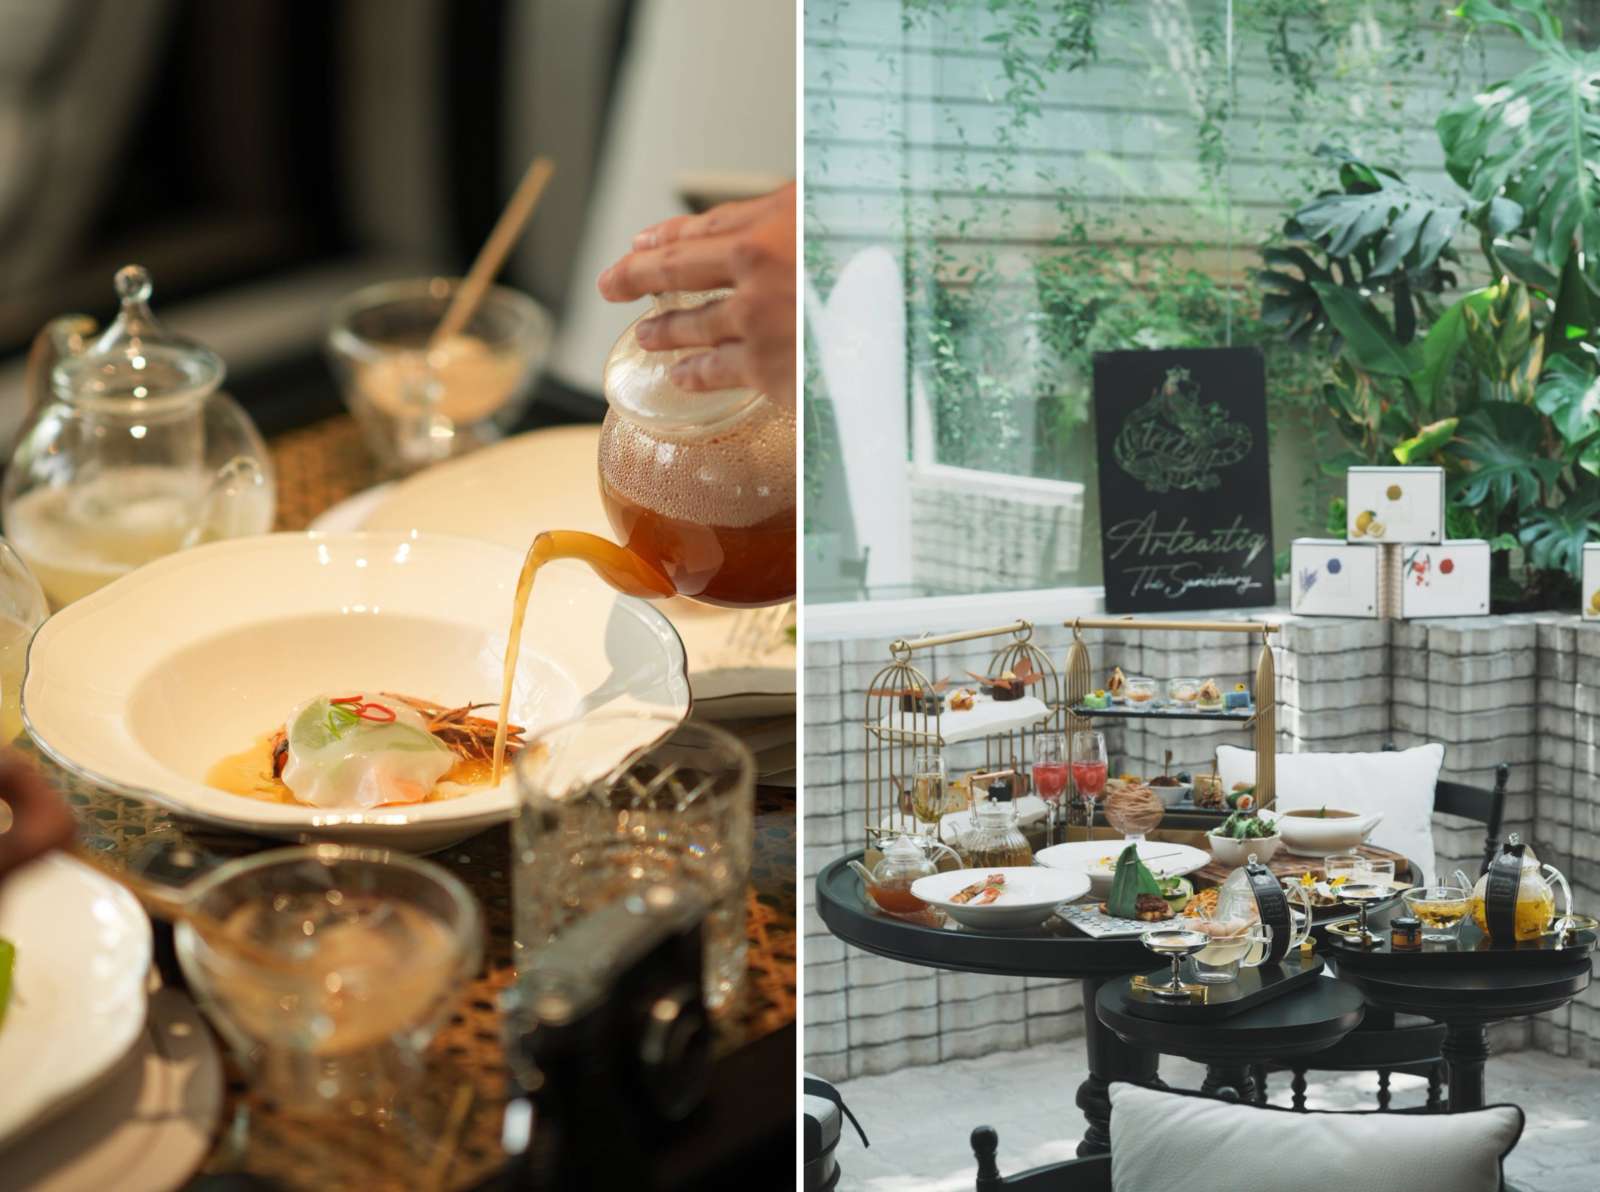 Arteastiq, nghệ thuật trà Singapore, tea break, địa điểm ăn uống, TP. HCM